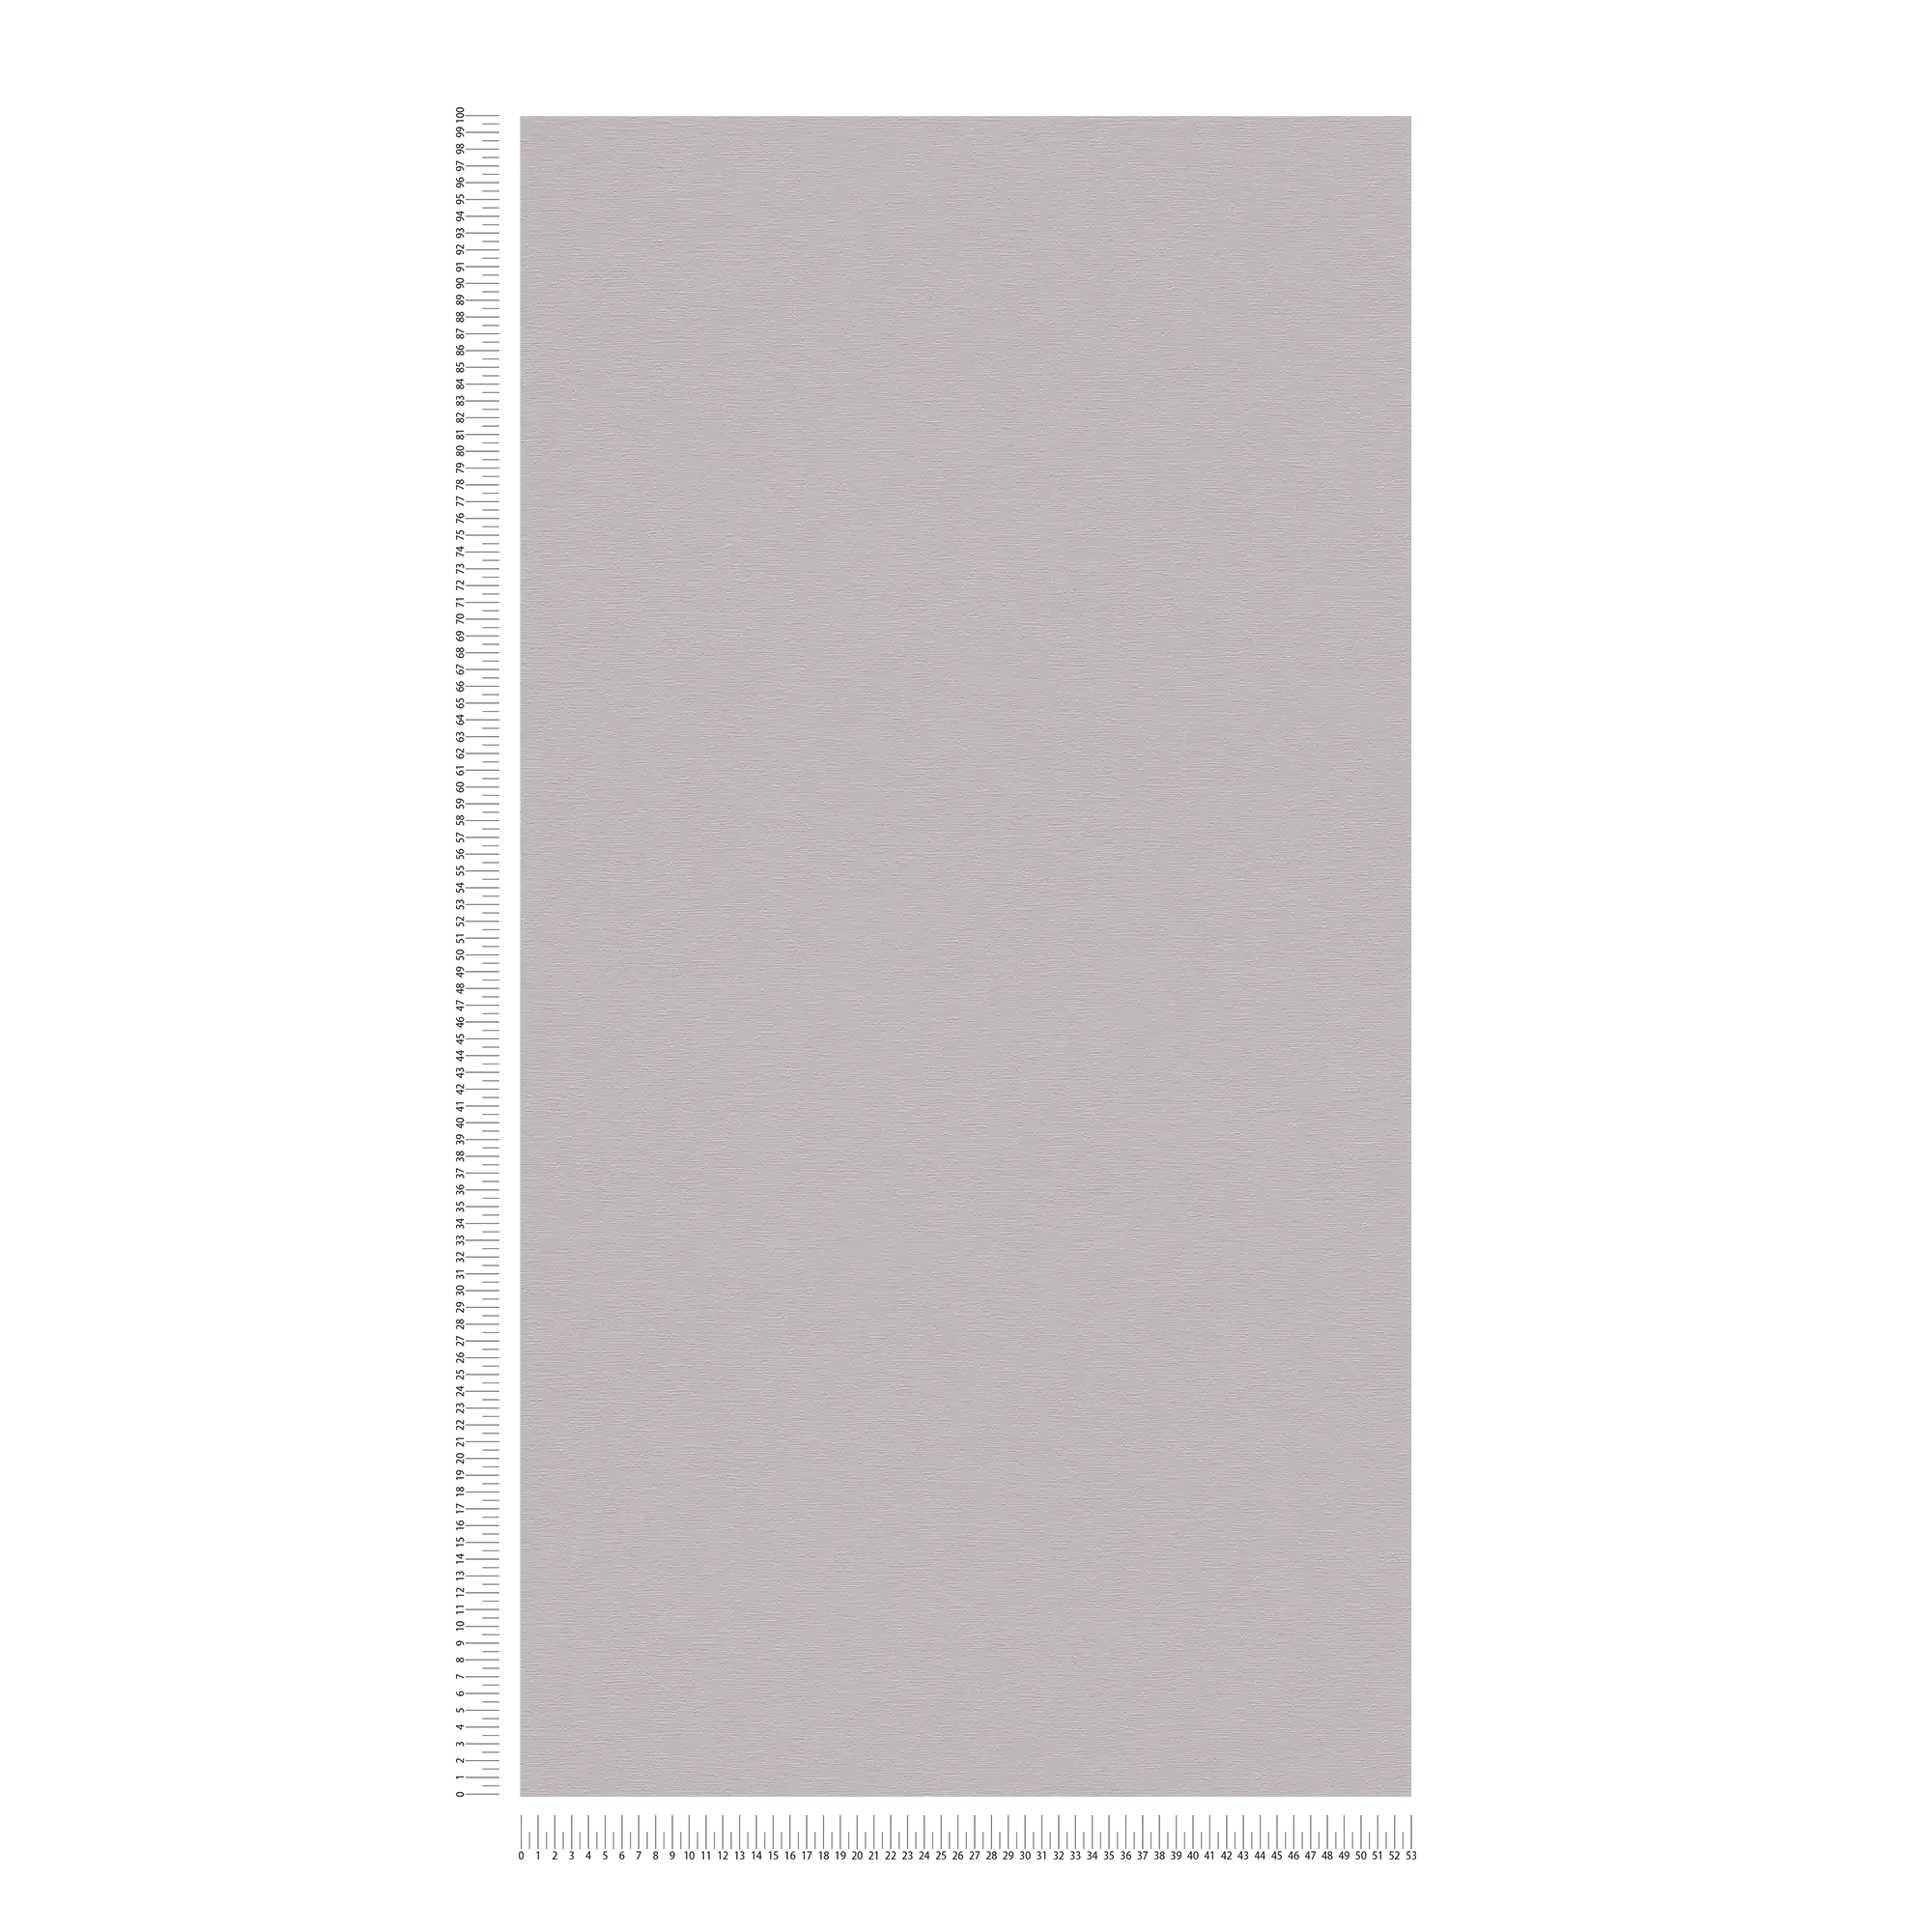             Carta da parati non tessuta monocolore con superficie leggermente screziata - grigio
        